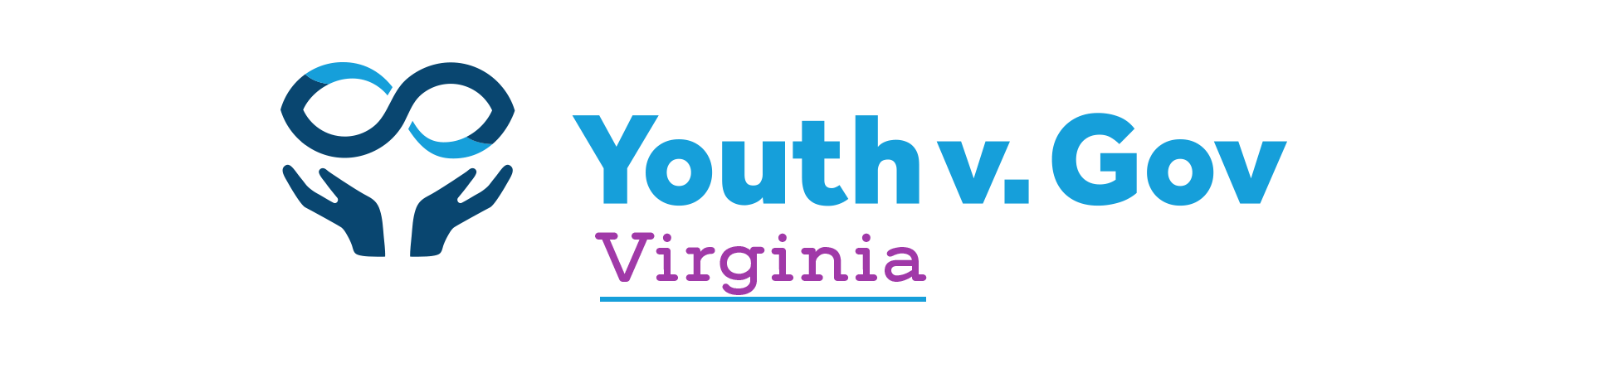 Youth v Gov Virginia